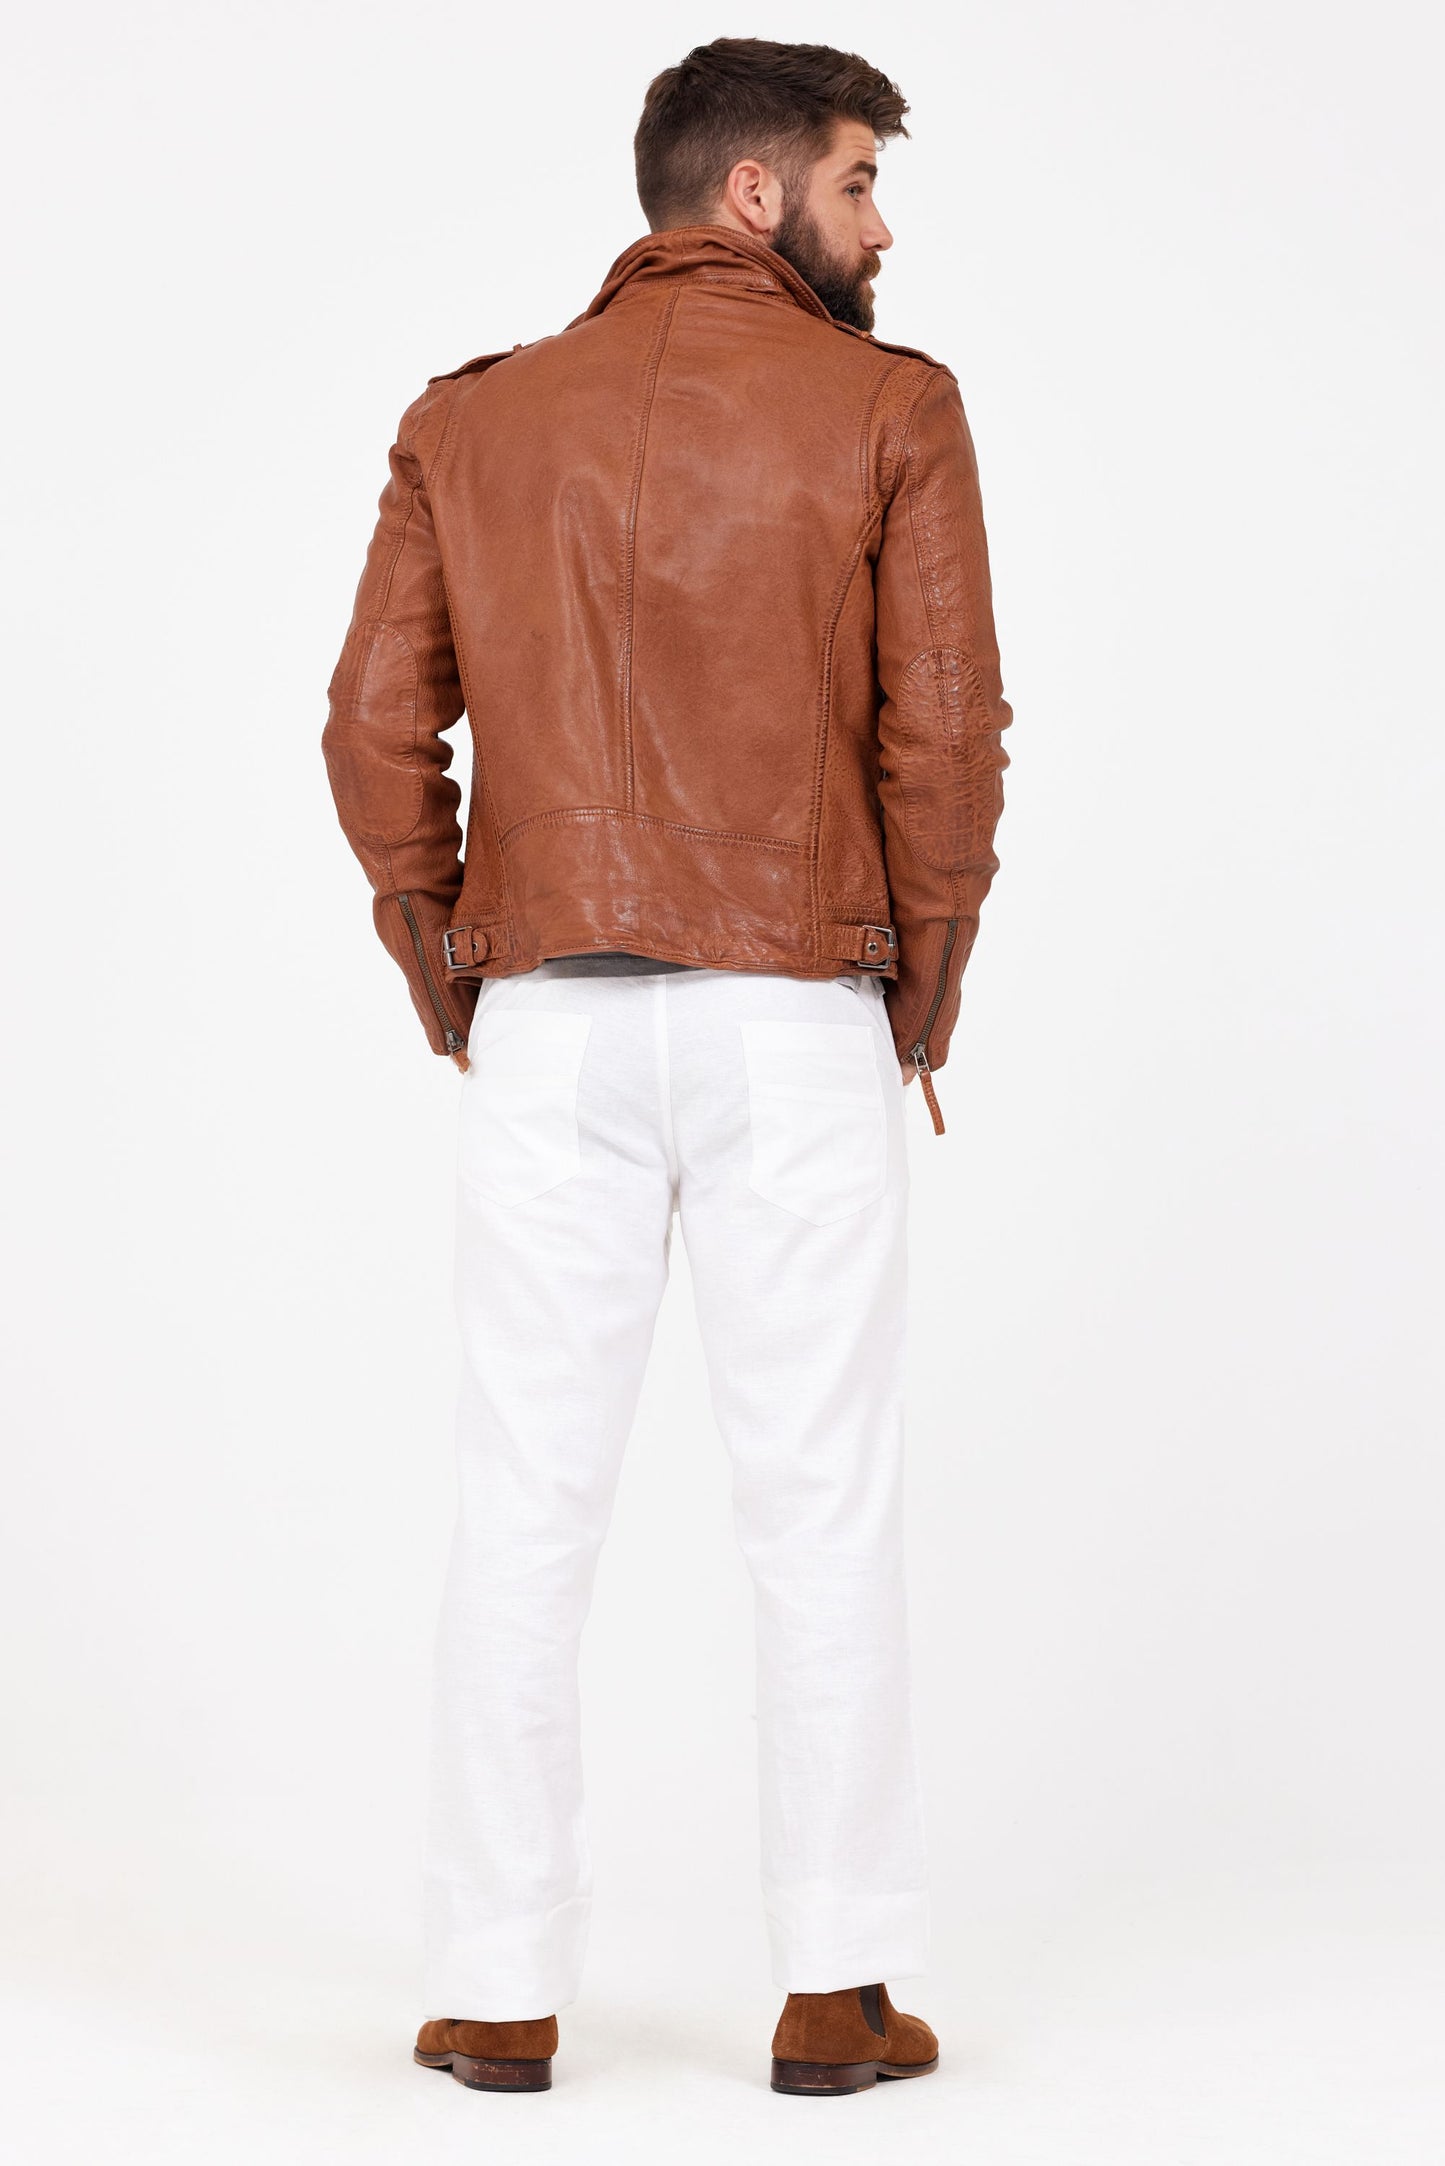 Malic Men's Leather Jacket